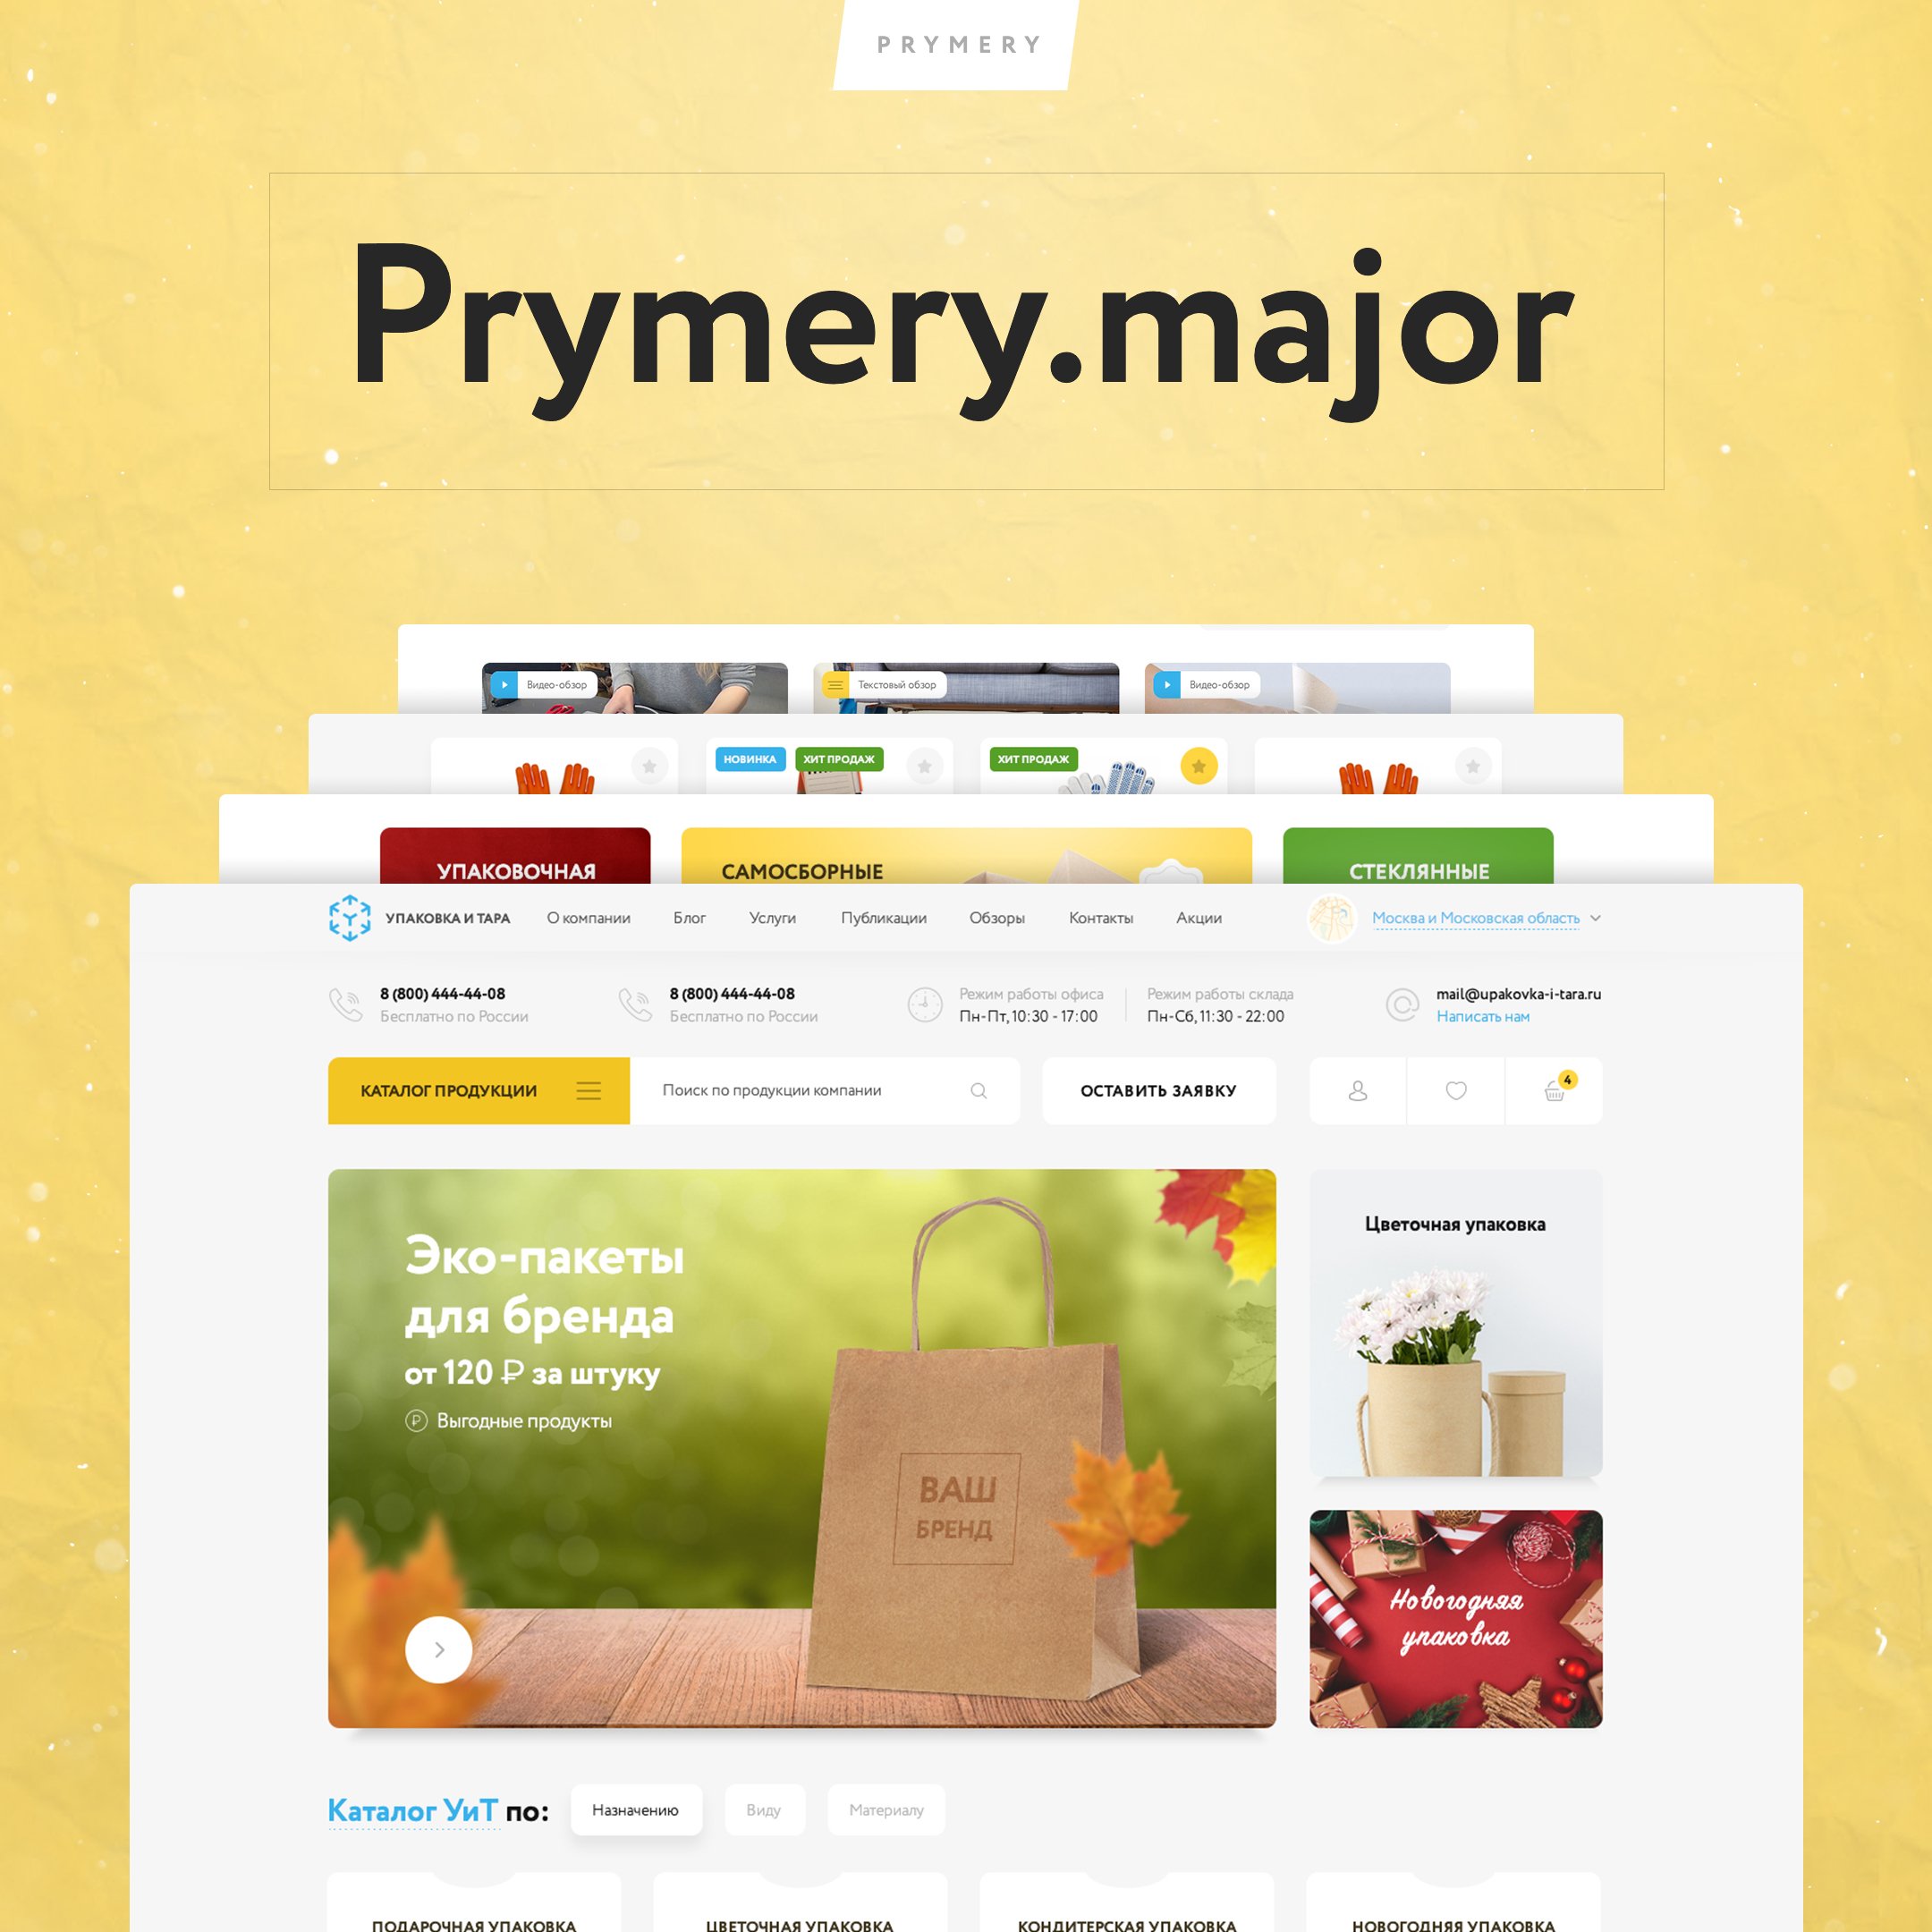 Prymery: Major - современный интернет-магазин